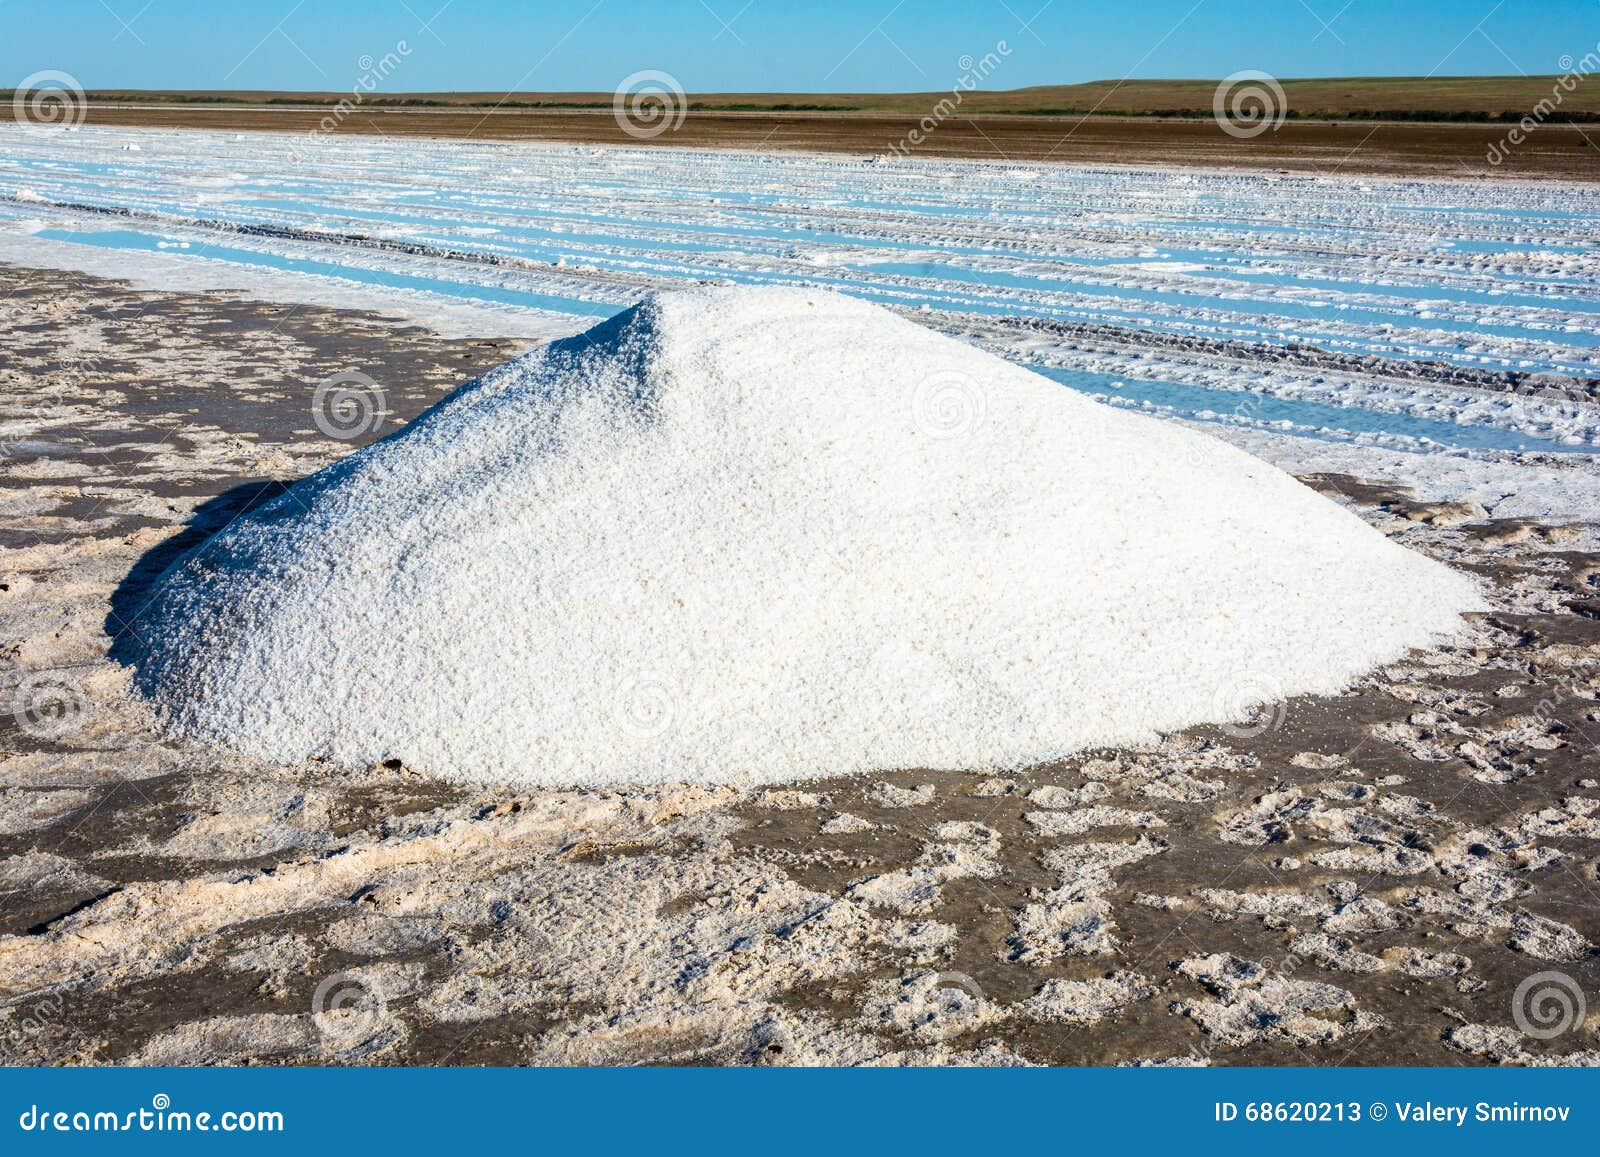 Соль добывается в озере. Поваренная соль озеро Баскунчак. Каменная соль Баскунчак. Баскунчак добыча соли. Добыча соли на озере Баскунчак.